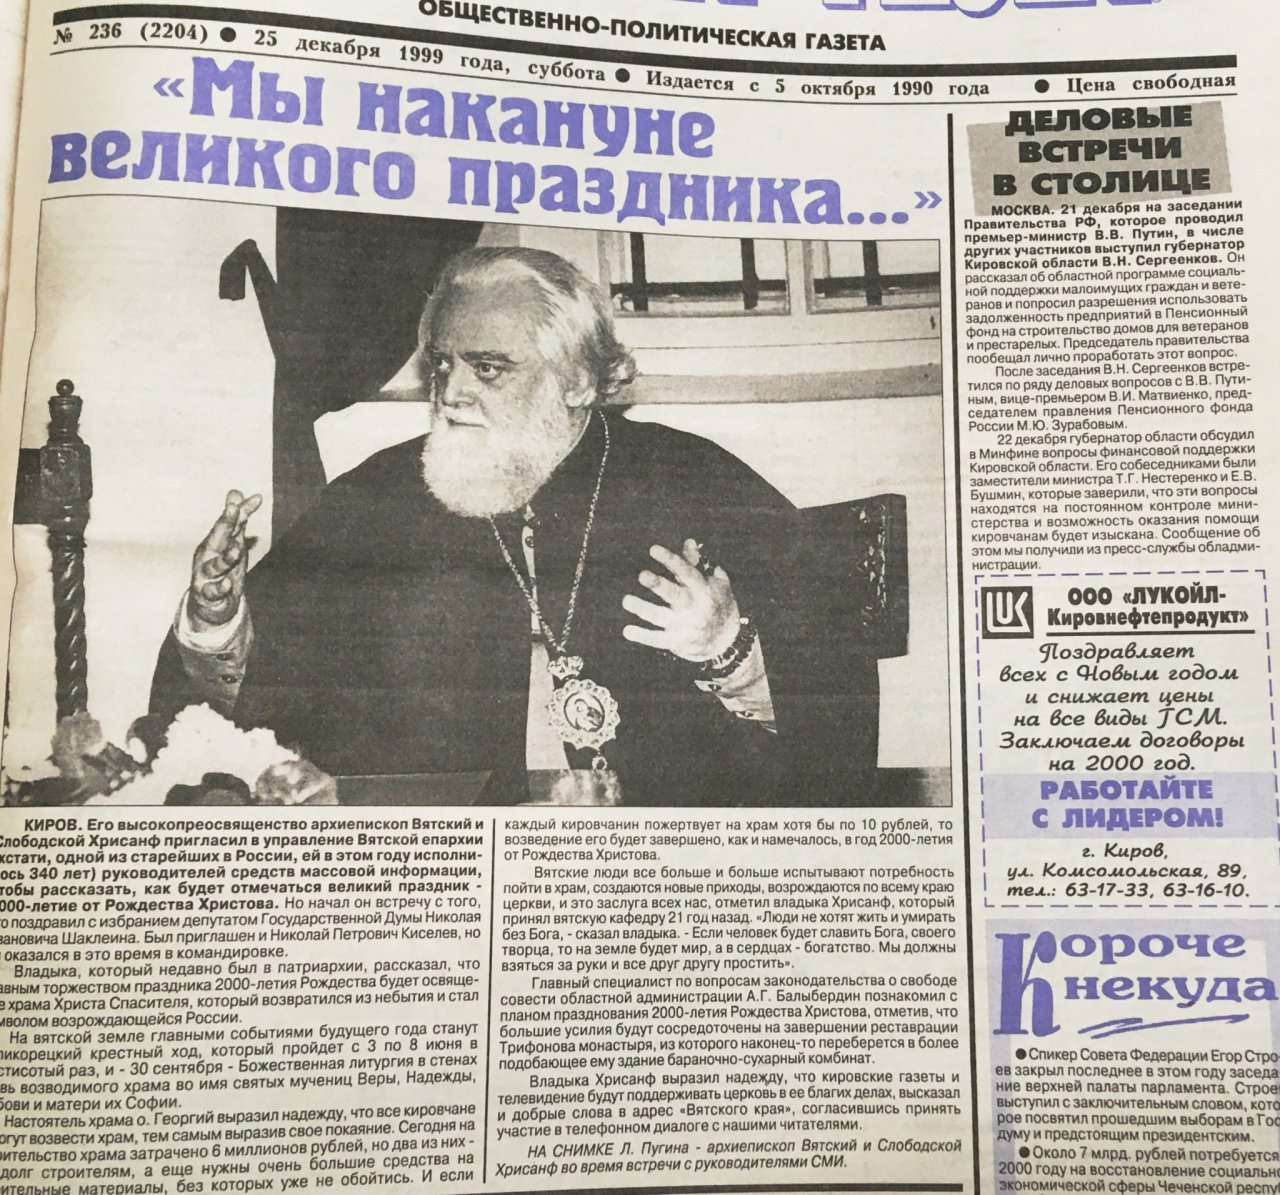 Киров 1999 года: медведь побеждает на выборах, арест цыганских баронов и новая жизнь филармонии